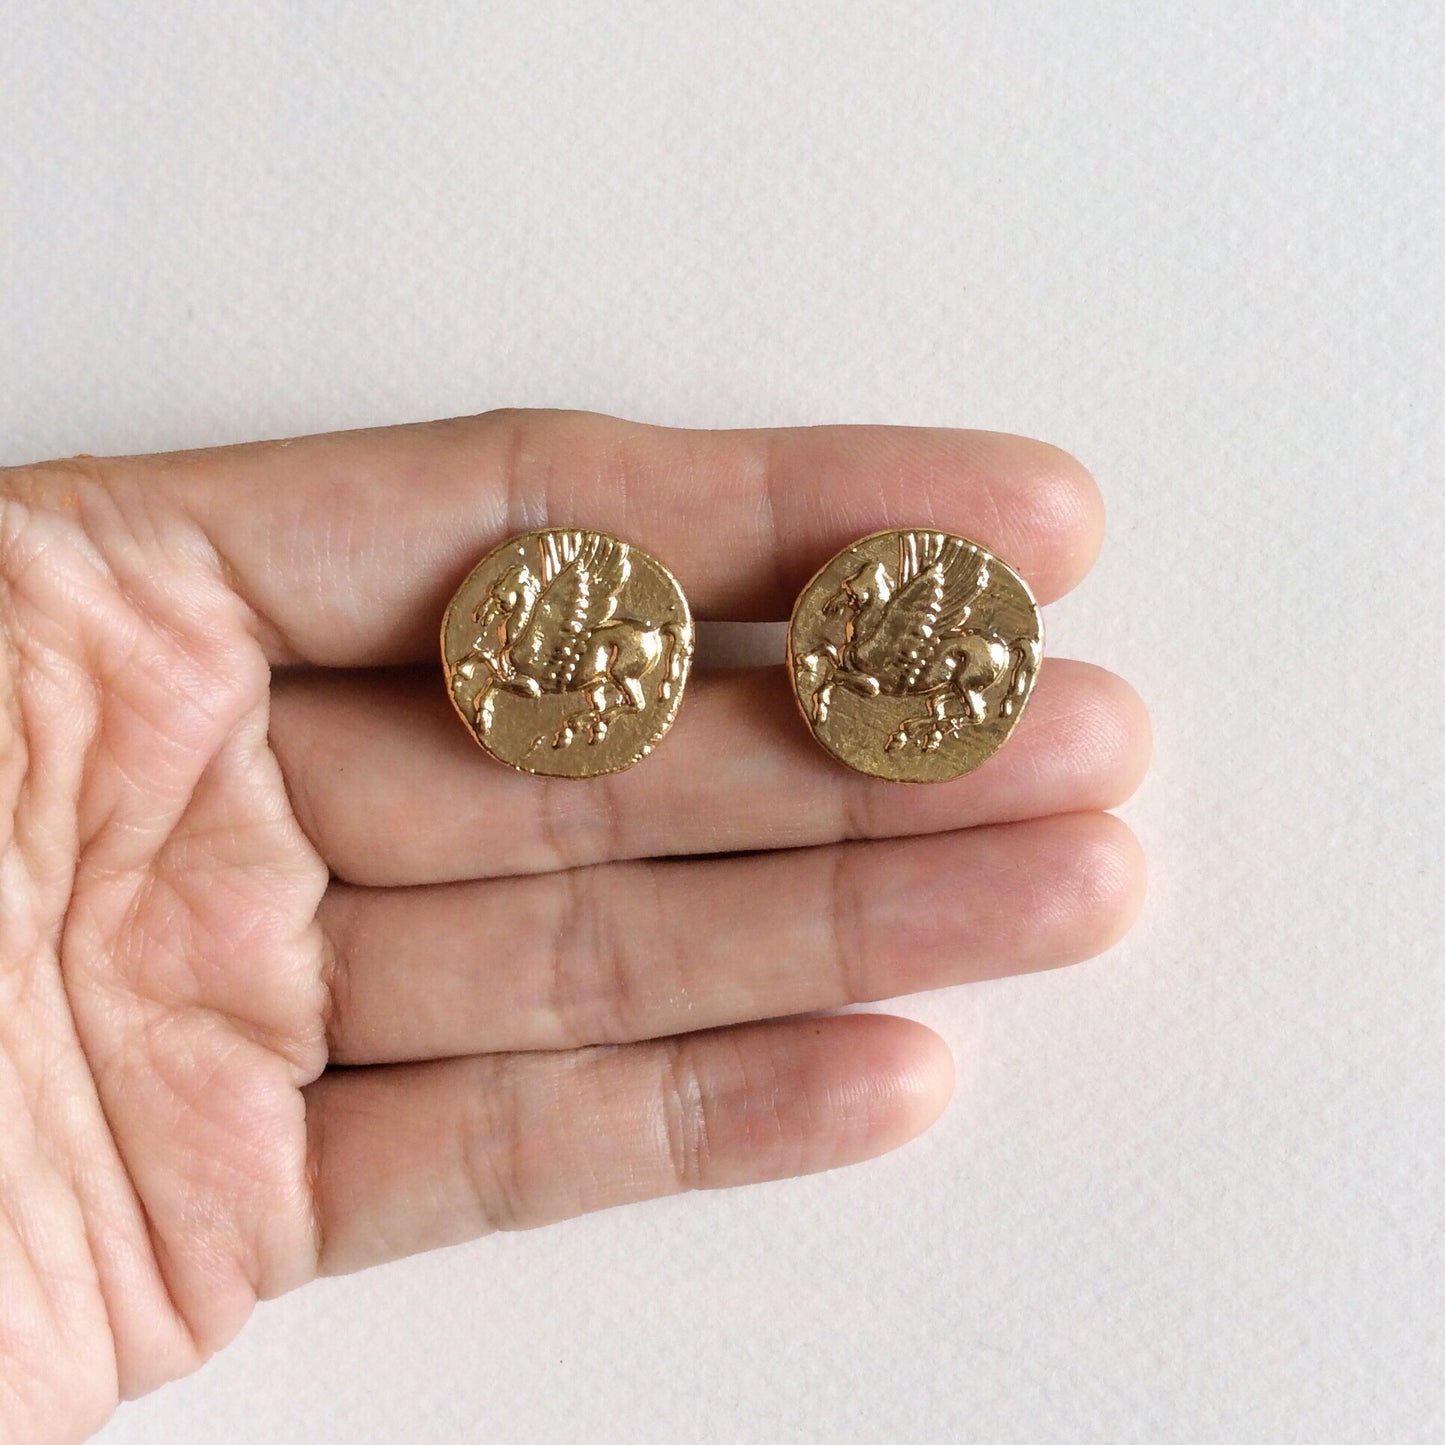 Pegasus coin stud earrings